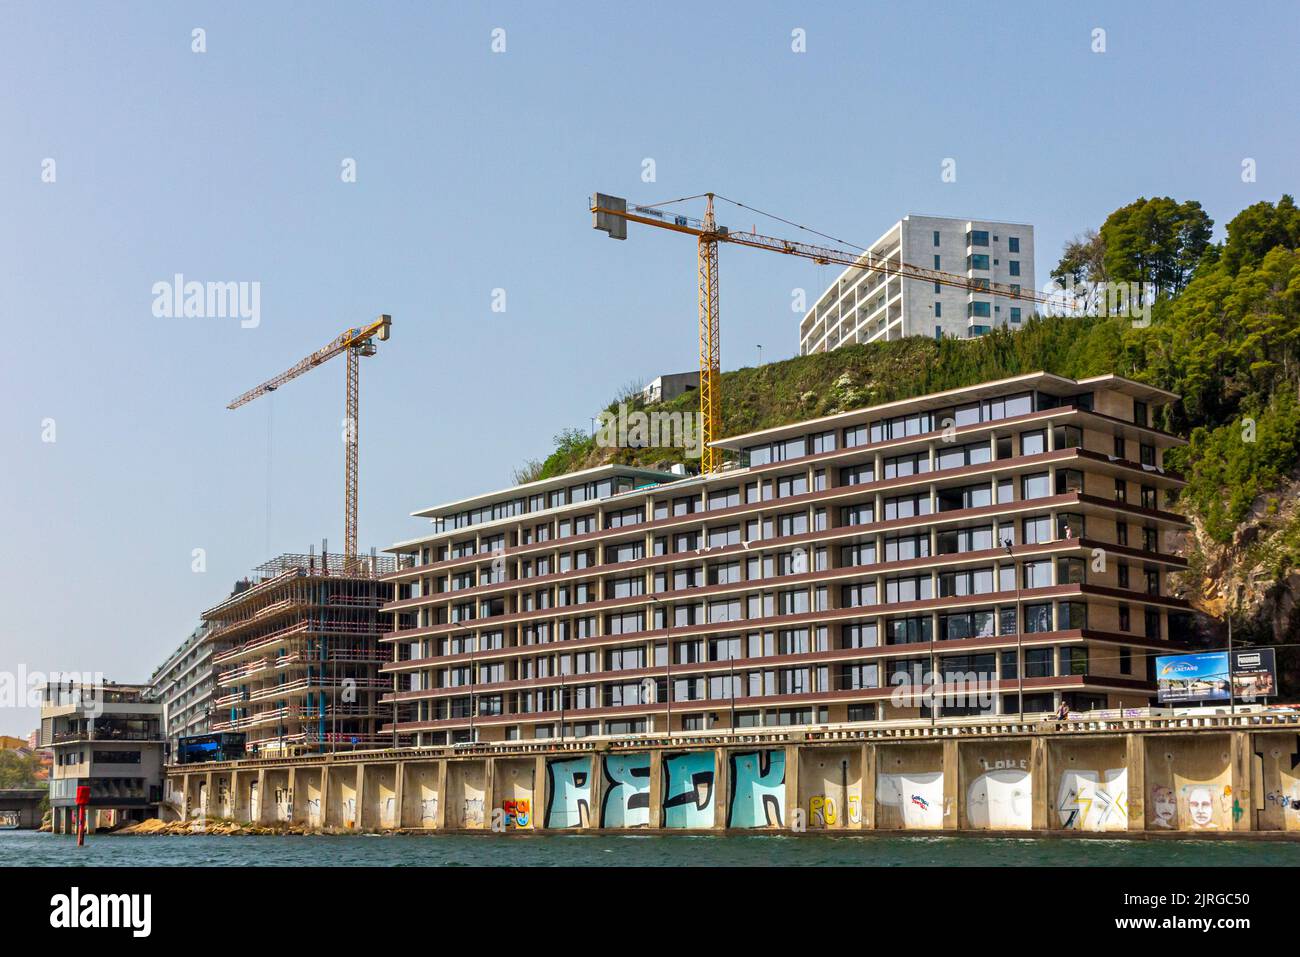 Appartamenti moderni in costruzione sulle rive del fiume Douro a Porto, una delle principali città del Portogallo settentrionale. Foto Stock